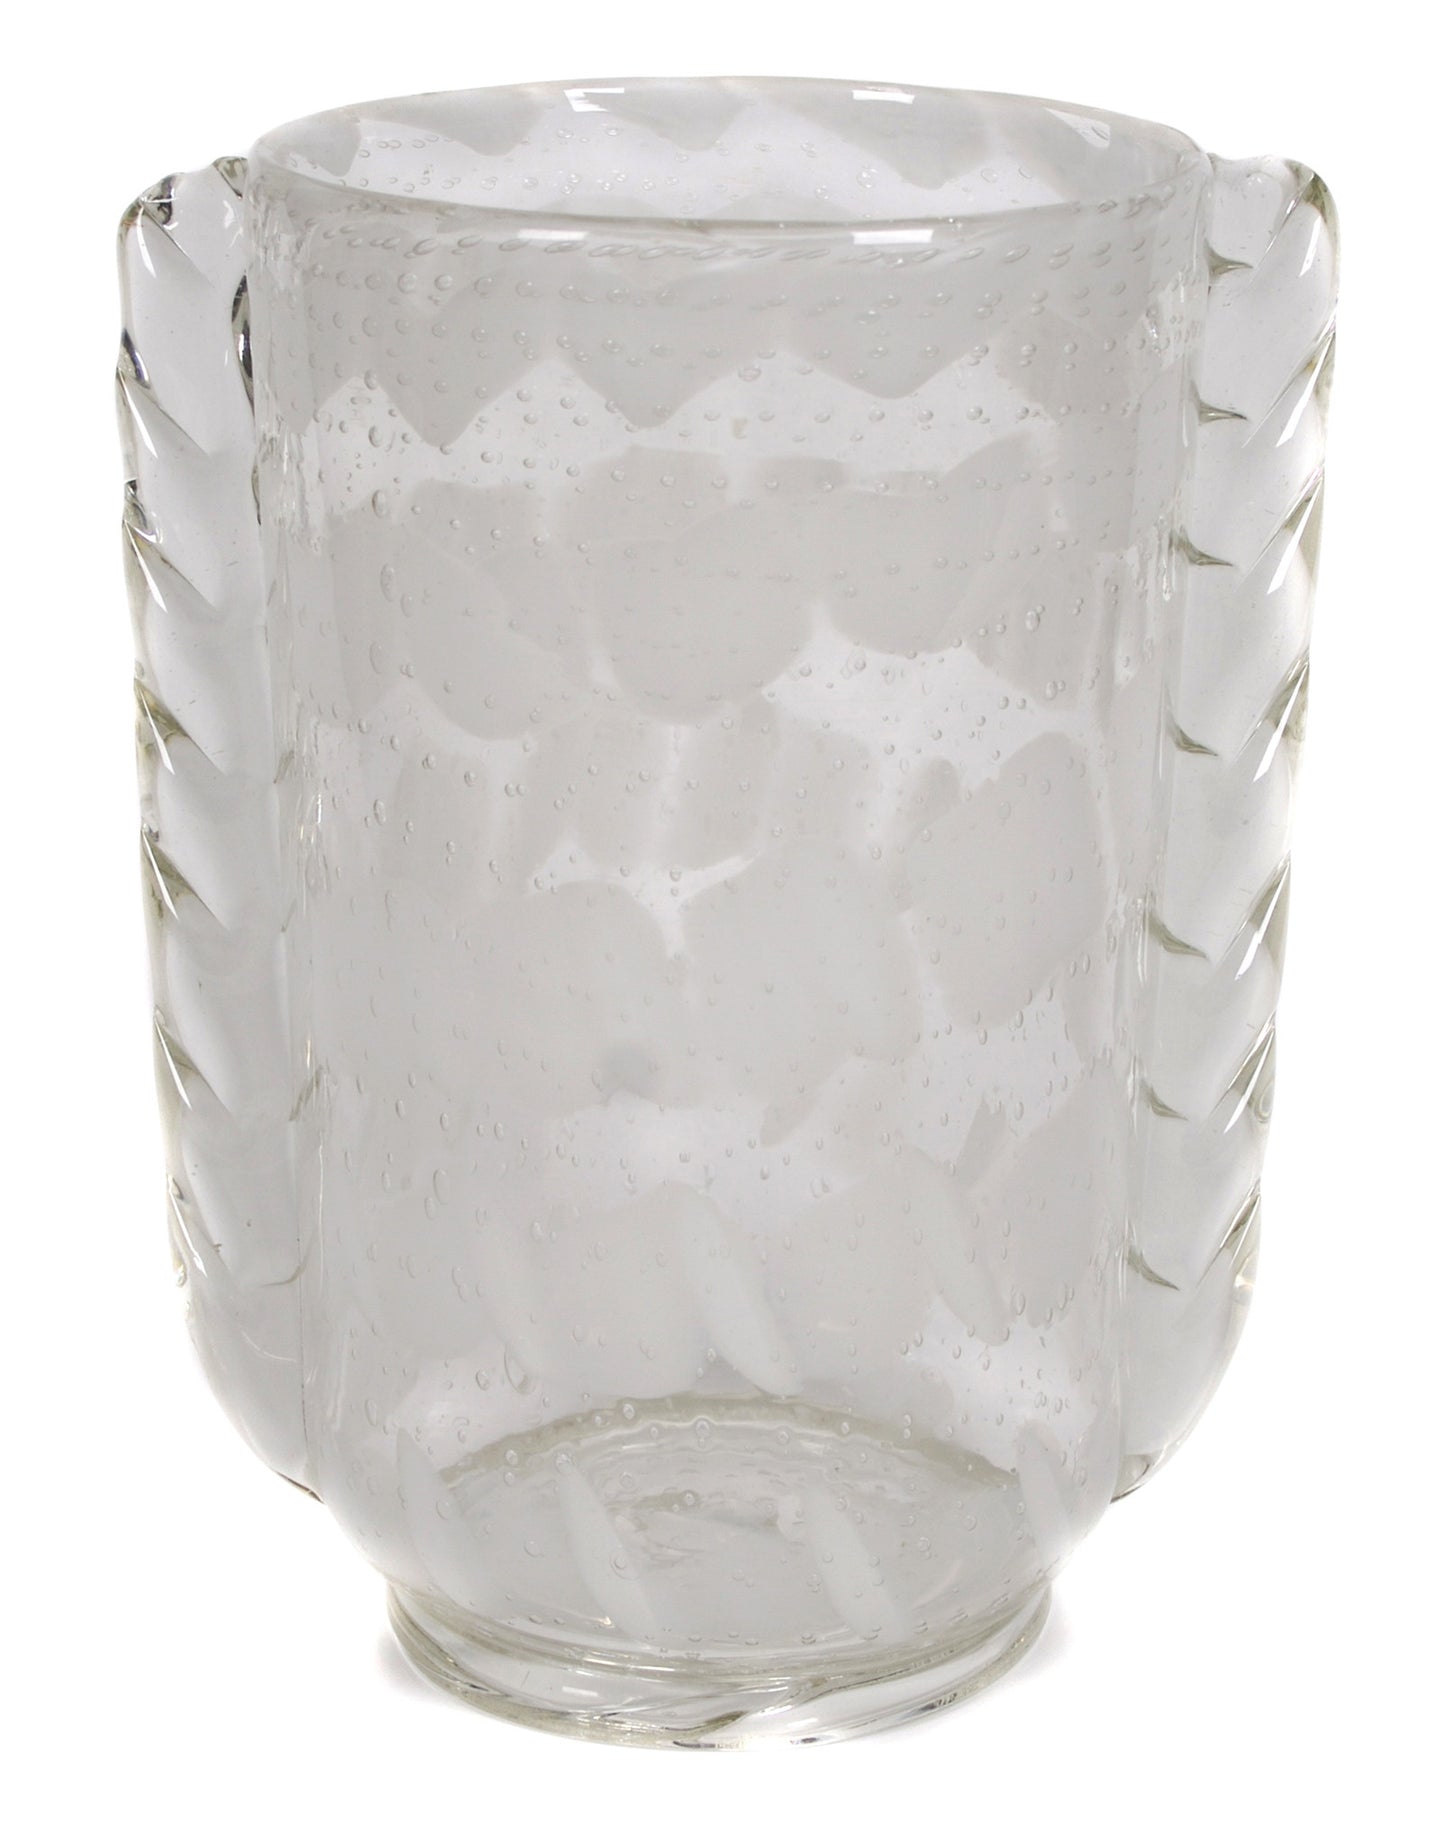 <B>BAROVIER SEGUSO FERRO</B><BR> MURANO GLASS VASE, CIRCA 1934-1936</BR>